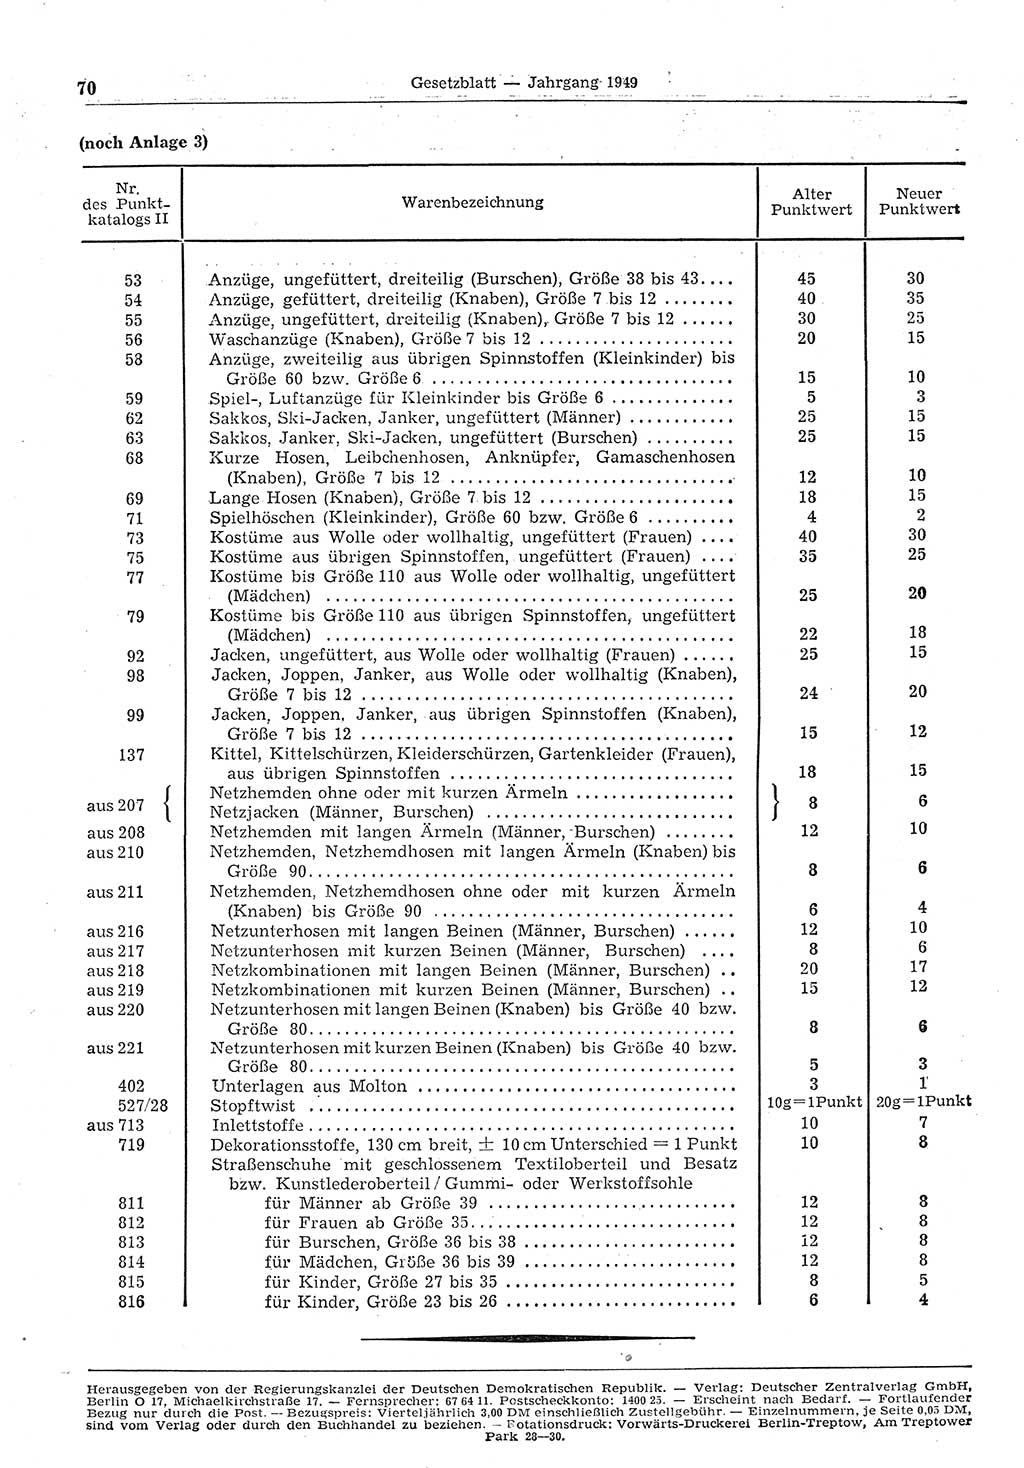 Gesetzblatt (GBl.) der Deutschen Demokratischen Republik (DDR) 1949, Seite 70 (GBl. DDR 1949, S. 70)